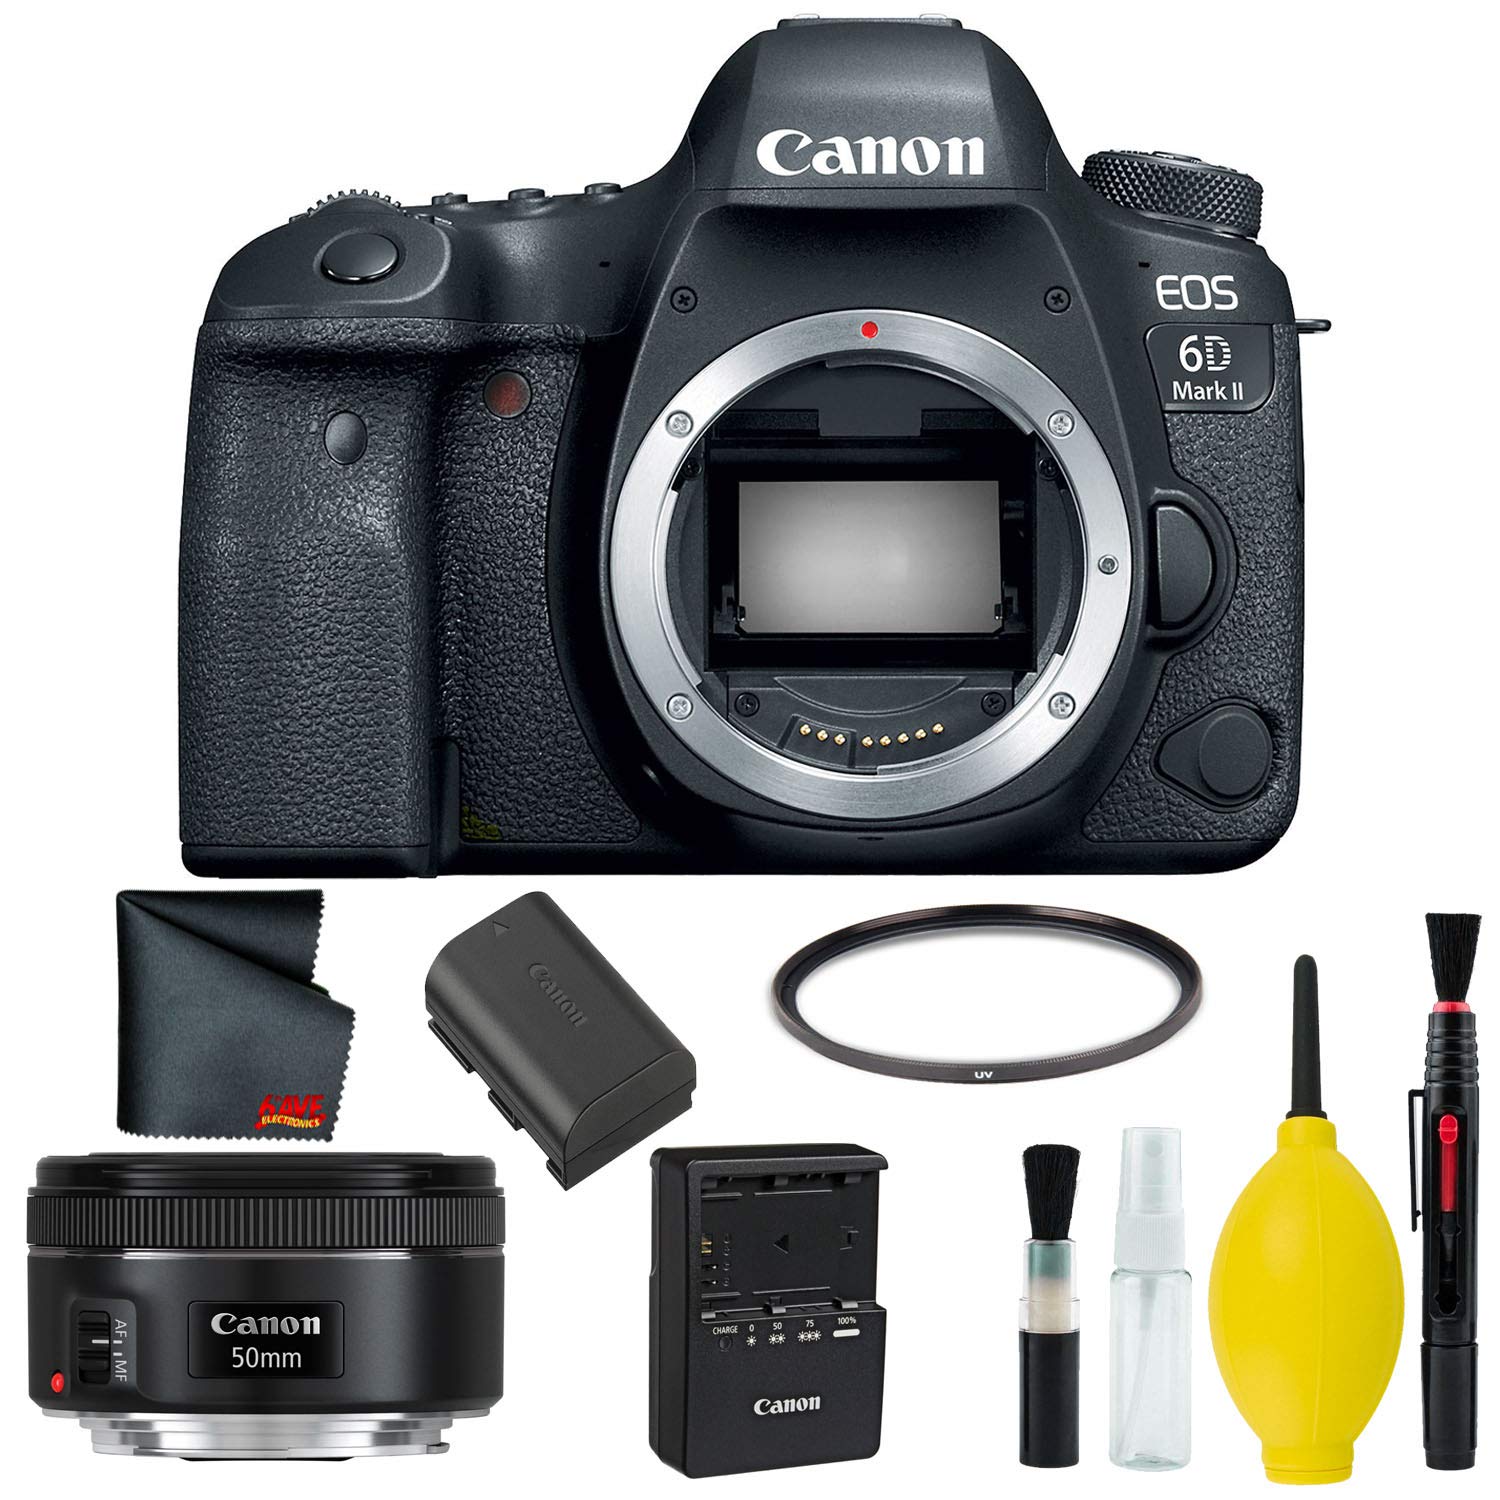 Canon EOS 6D Mark II DSLR Camera Body Only Basic Kit (International Model) w/Canon EF 50mm f/1.8 STM Lens - Internationa